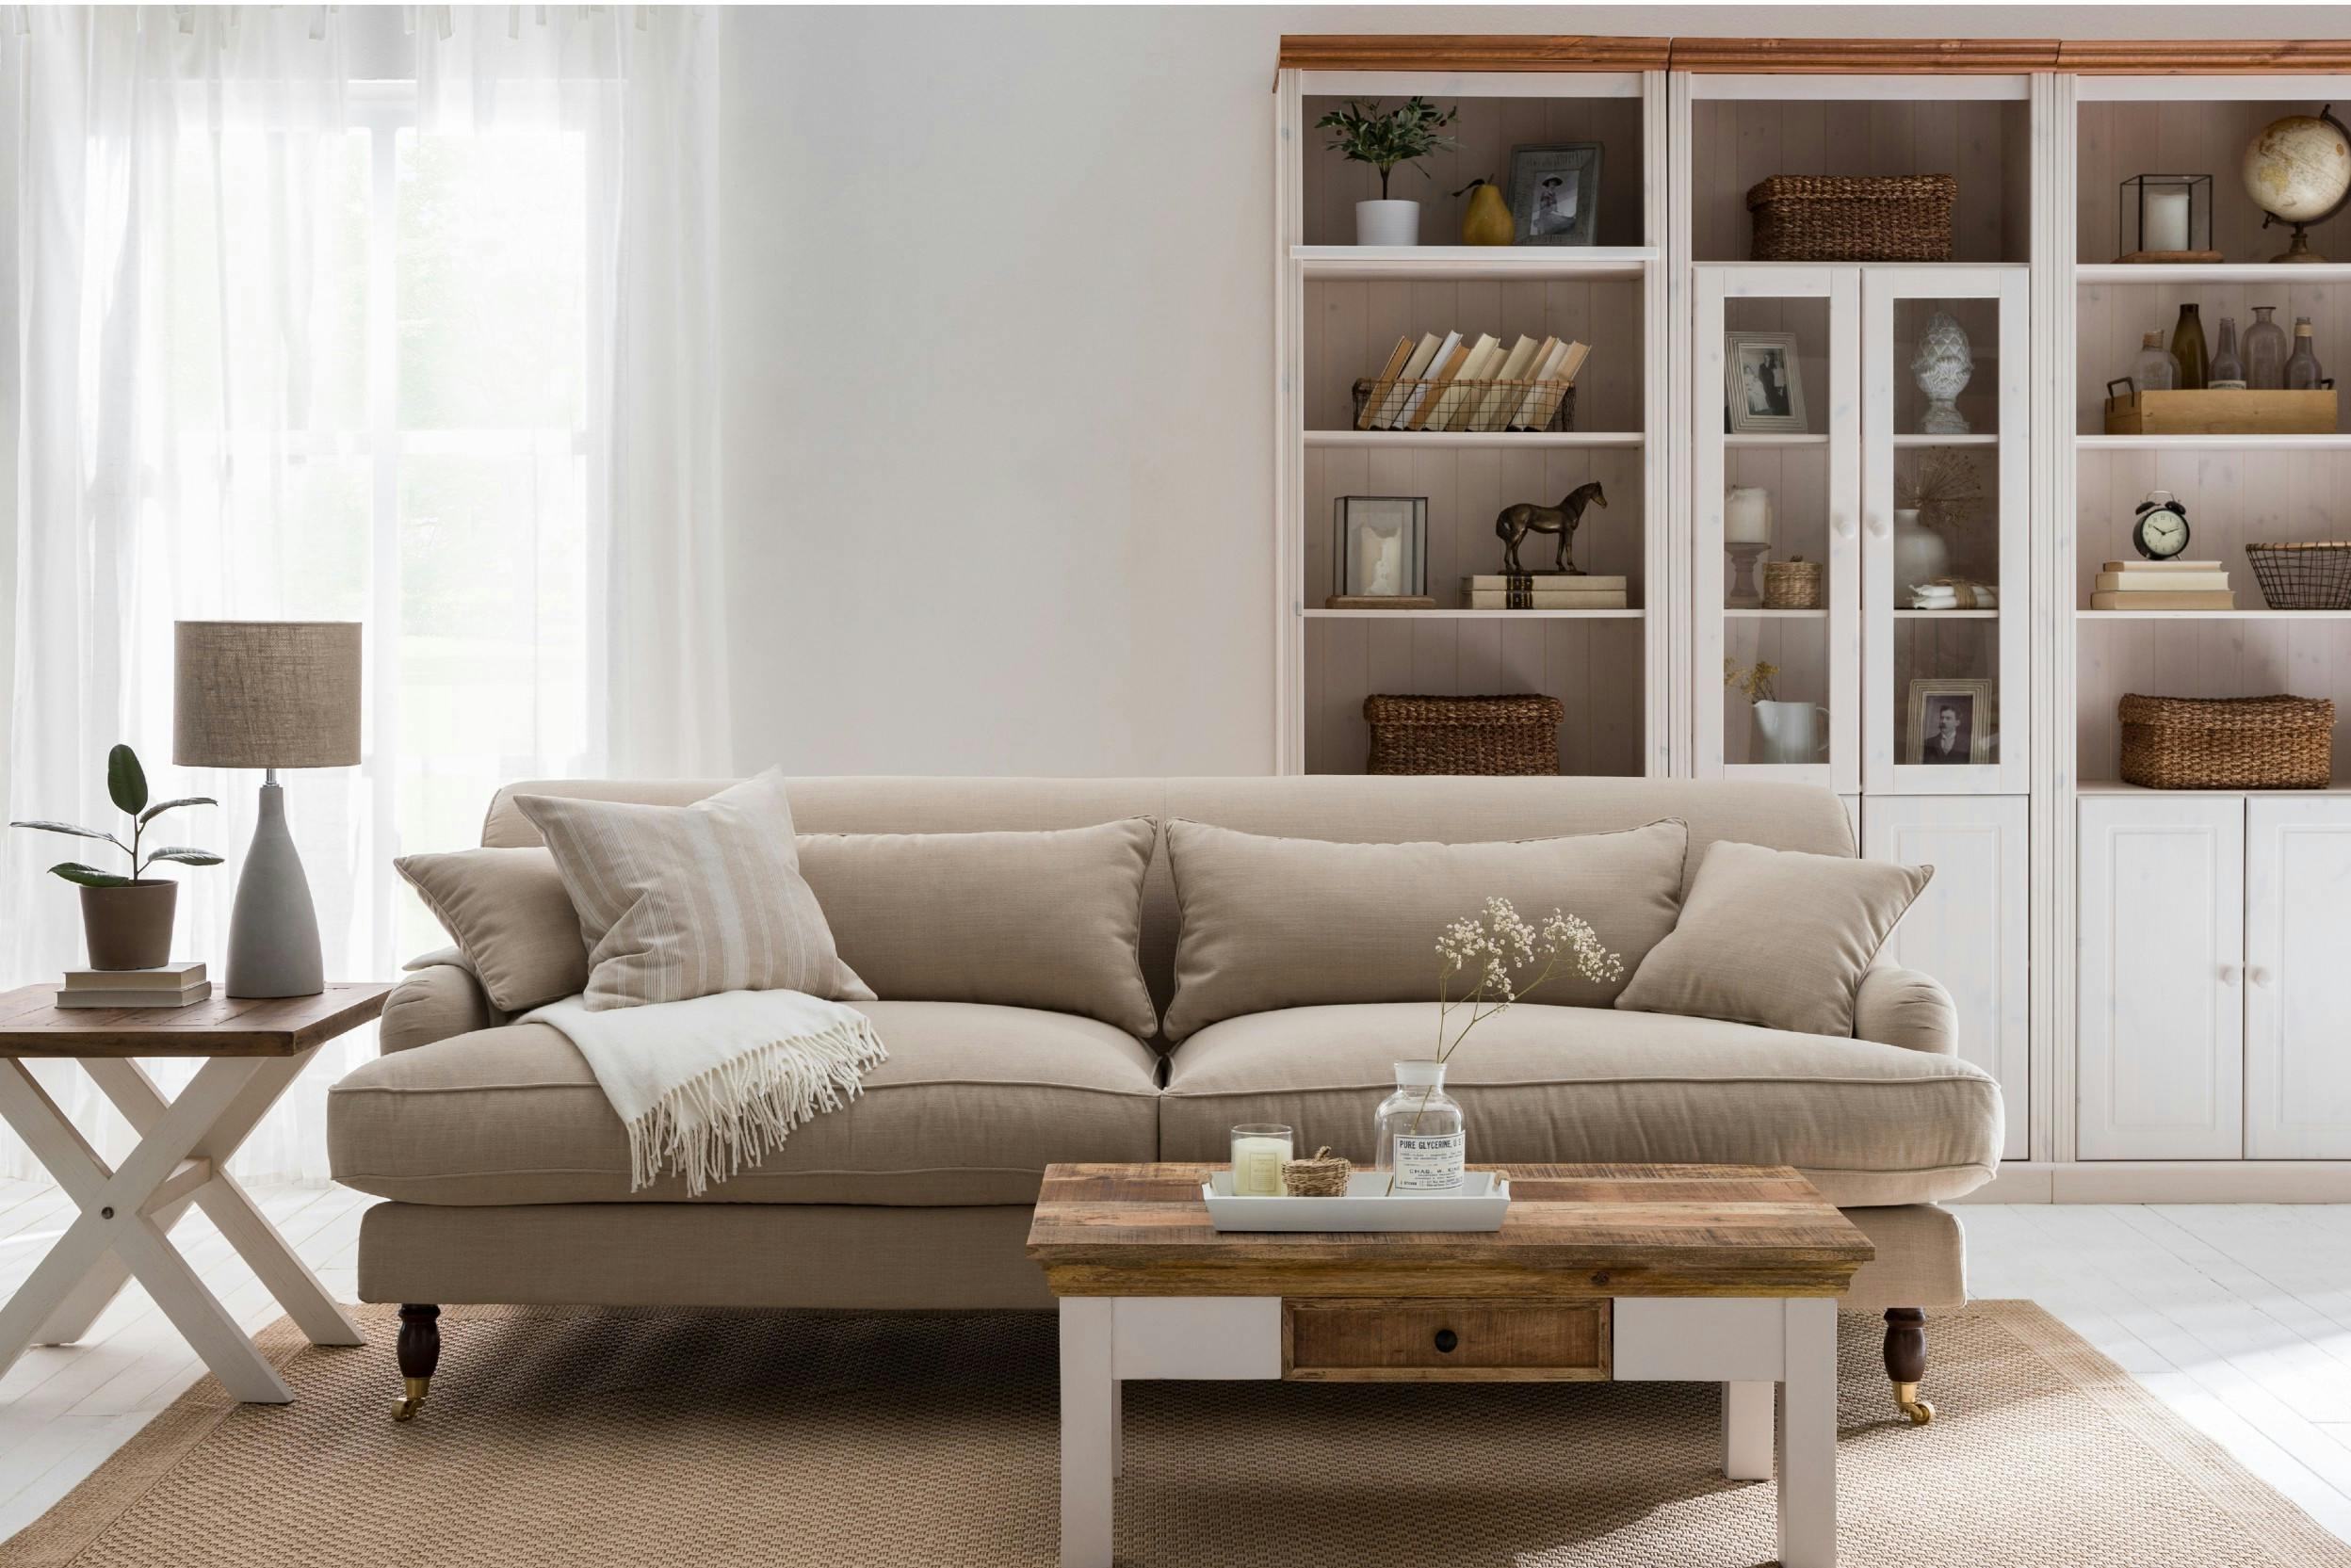 Un salon avec un canapé couleur crème, une table basse, et autres meubles